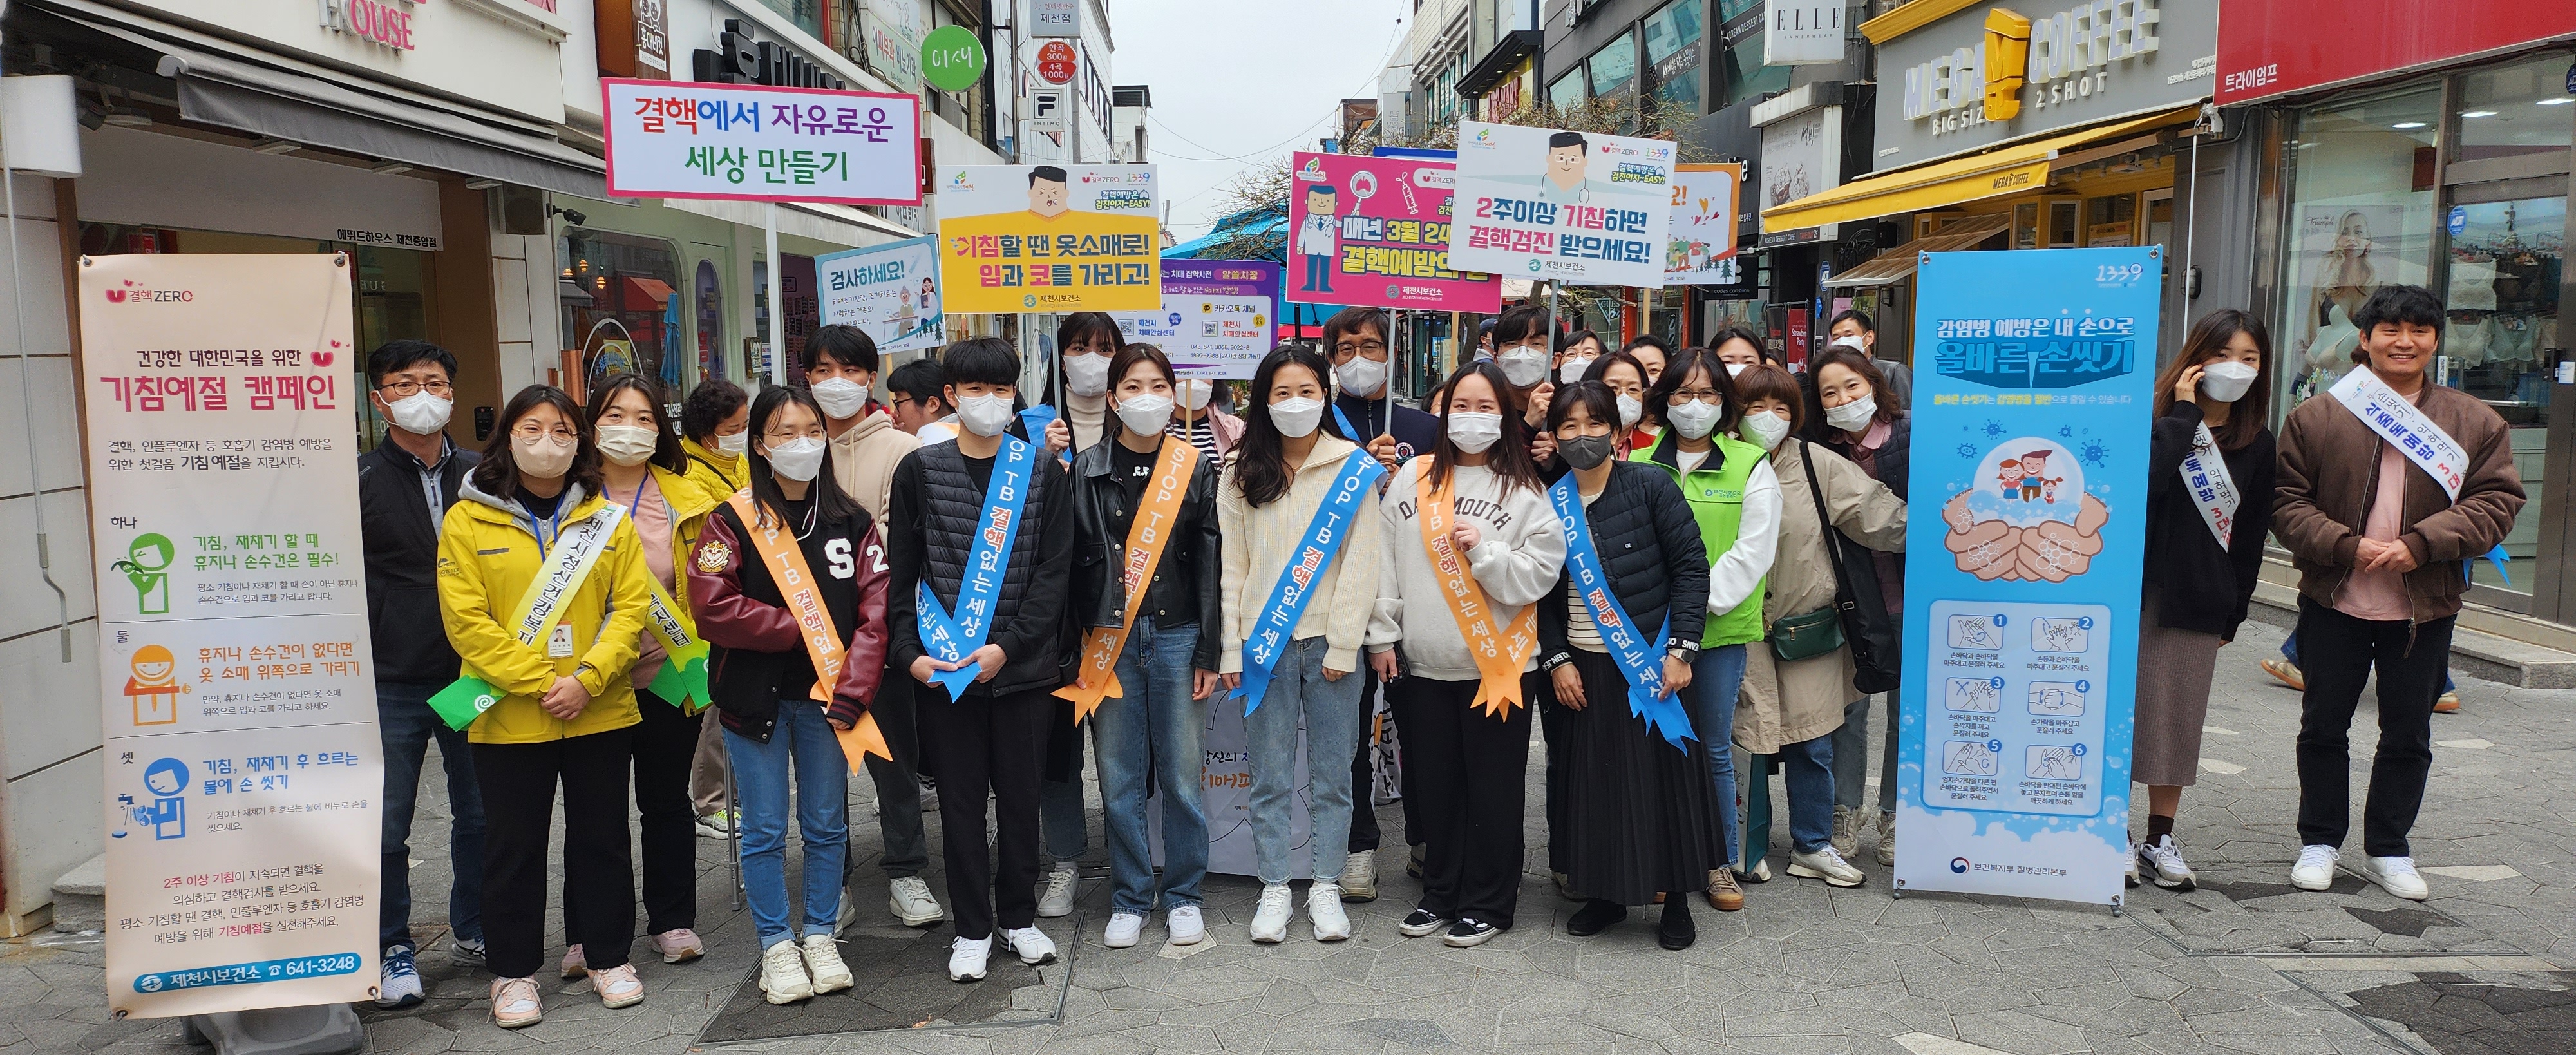 제14회 결핵 예방의날(3. 24.) 기념 캠페인 실시 이미지